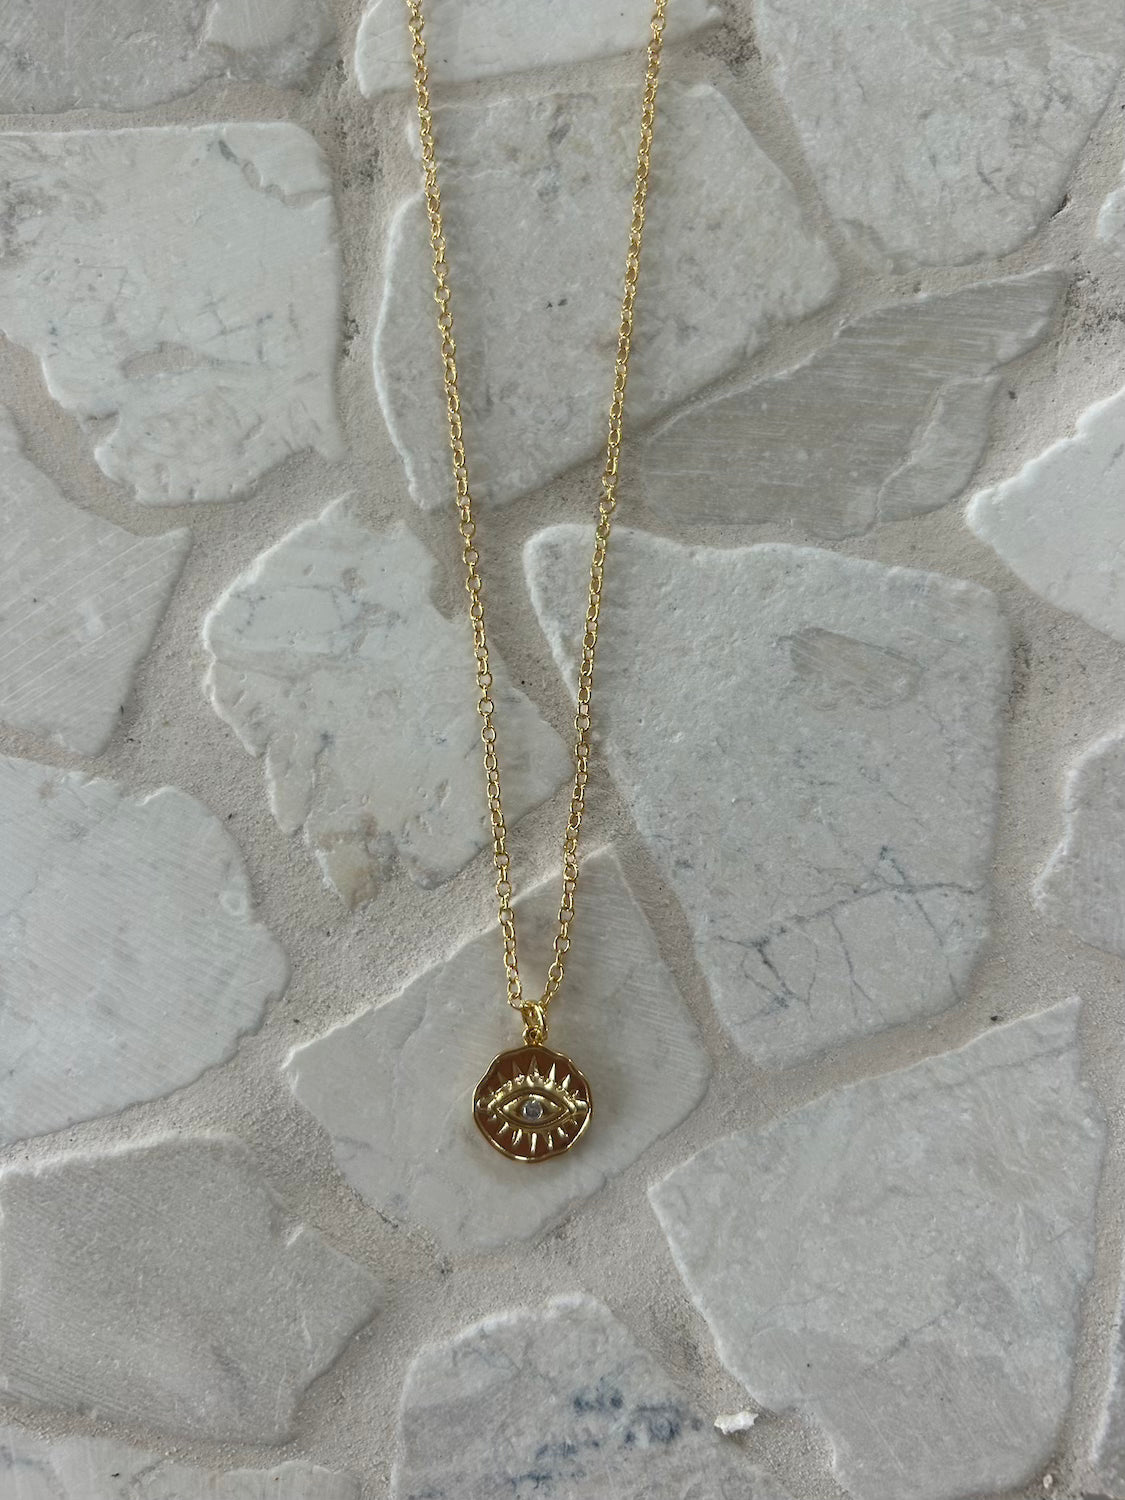 Evil Eye Necklace - nirvana Necklace - Malia jewellery - 18k Gold plated